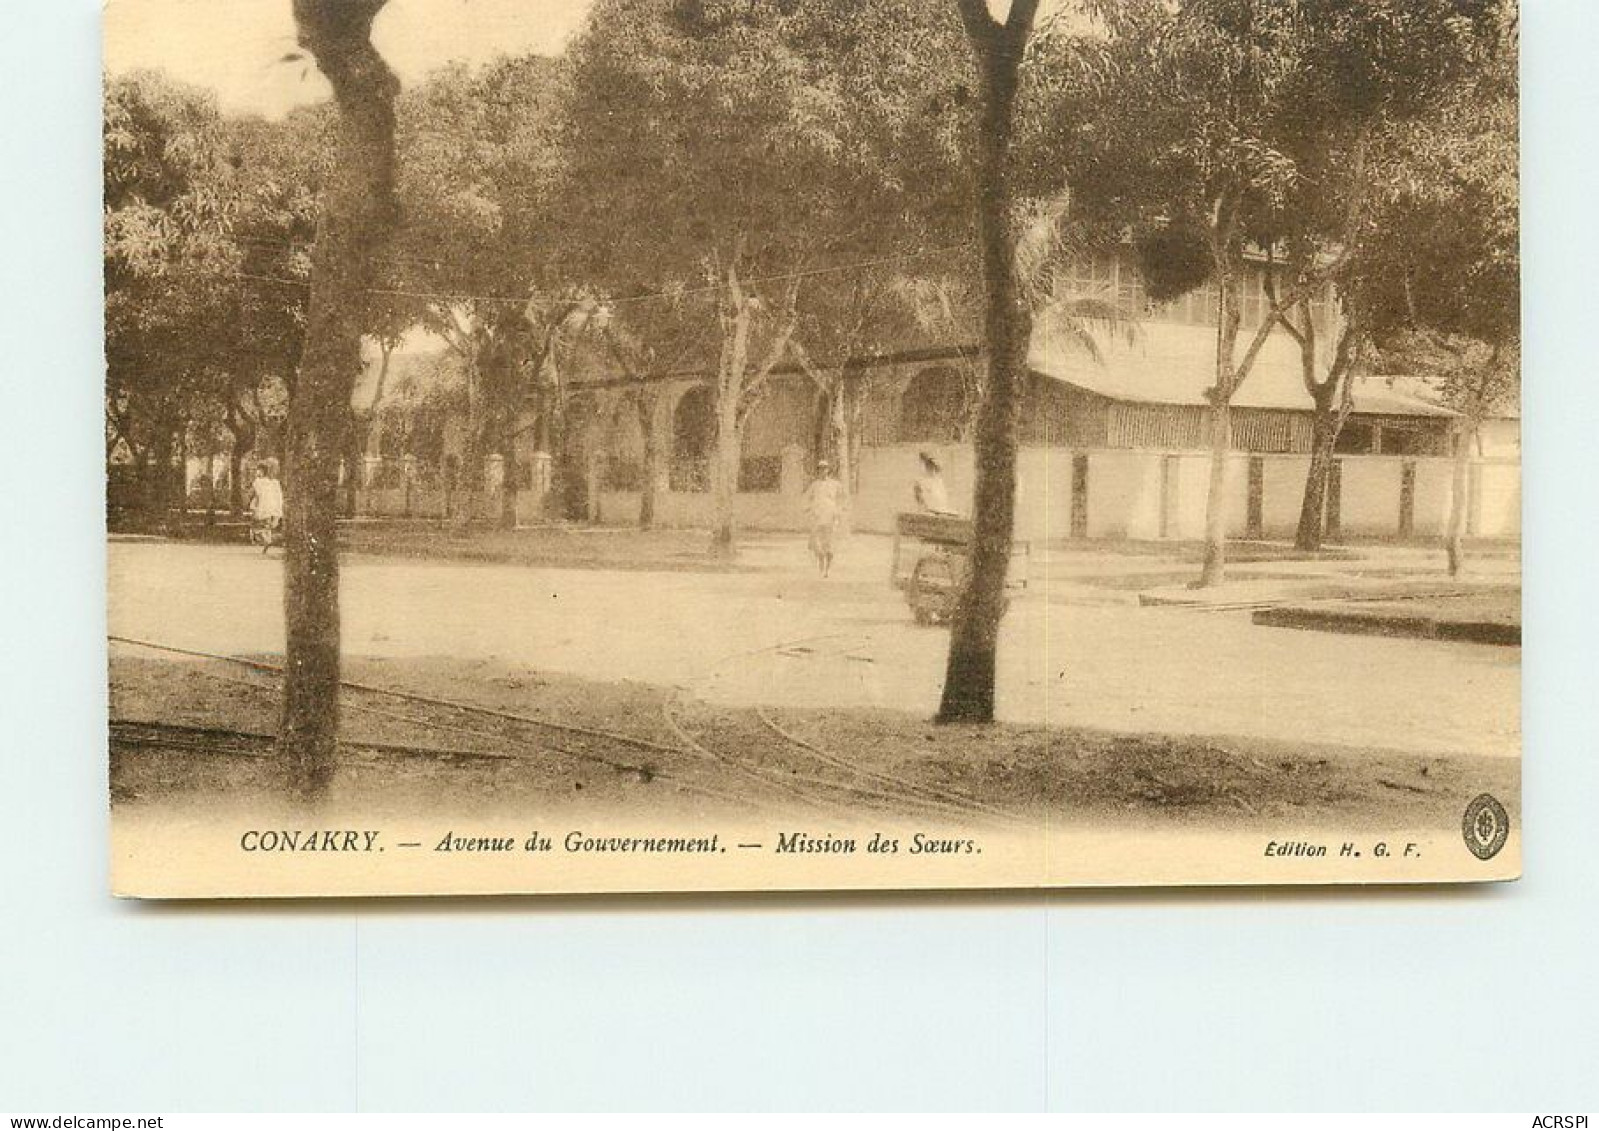 GUINEE   CONAKRY  Avenue Du Gouvernement Mission Des Soeurs TT 1430 - Guinea Francesa